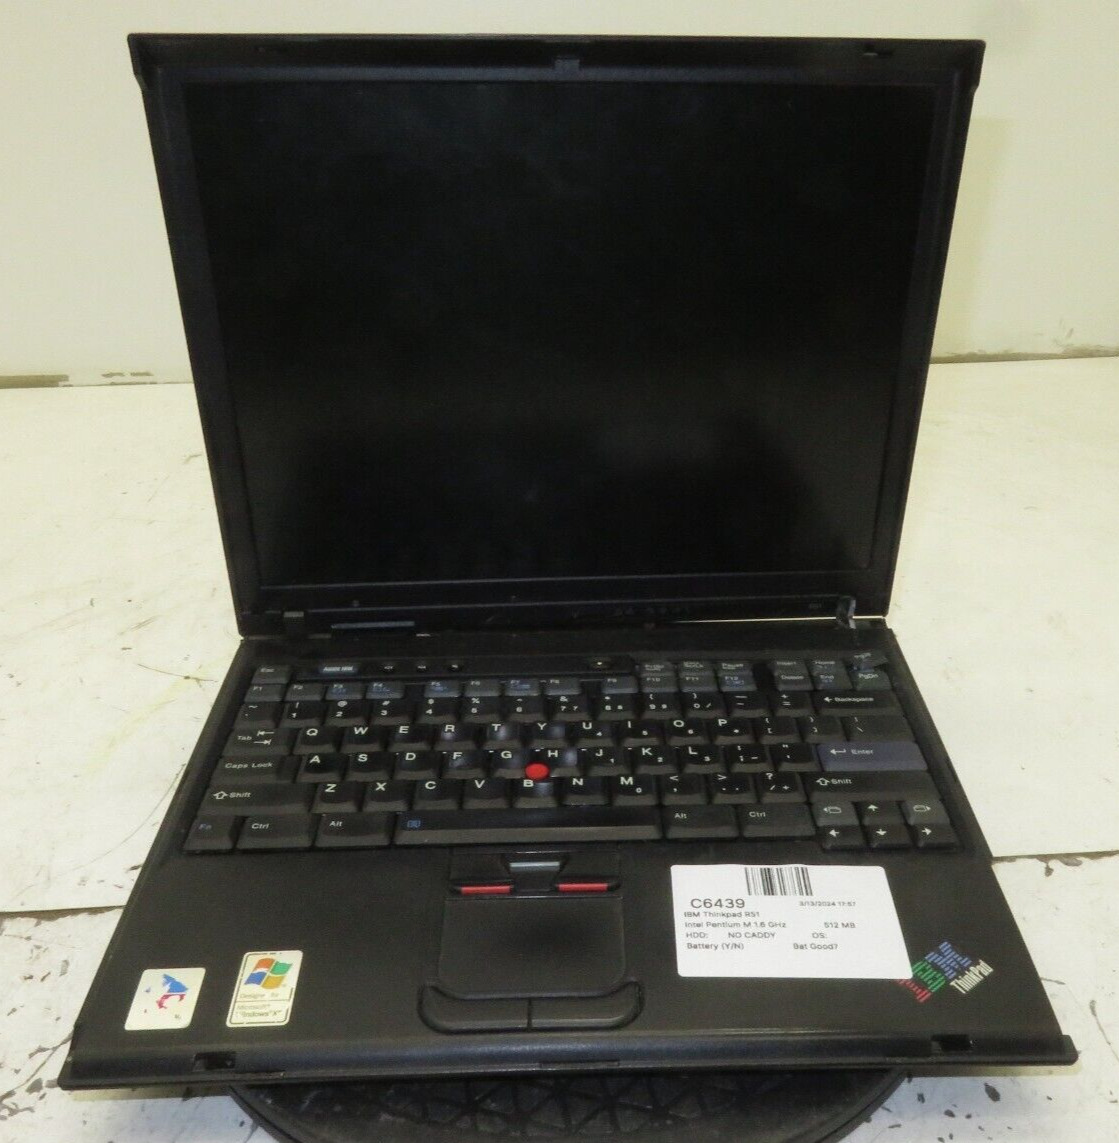 IBM ThinkPad R51 Laptop Intel Pentium M 512MB Ram No HDD or Battery